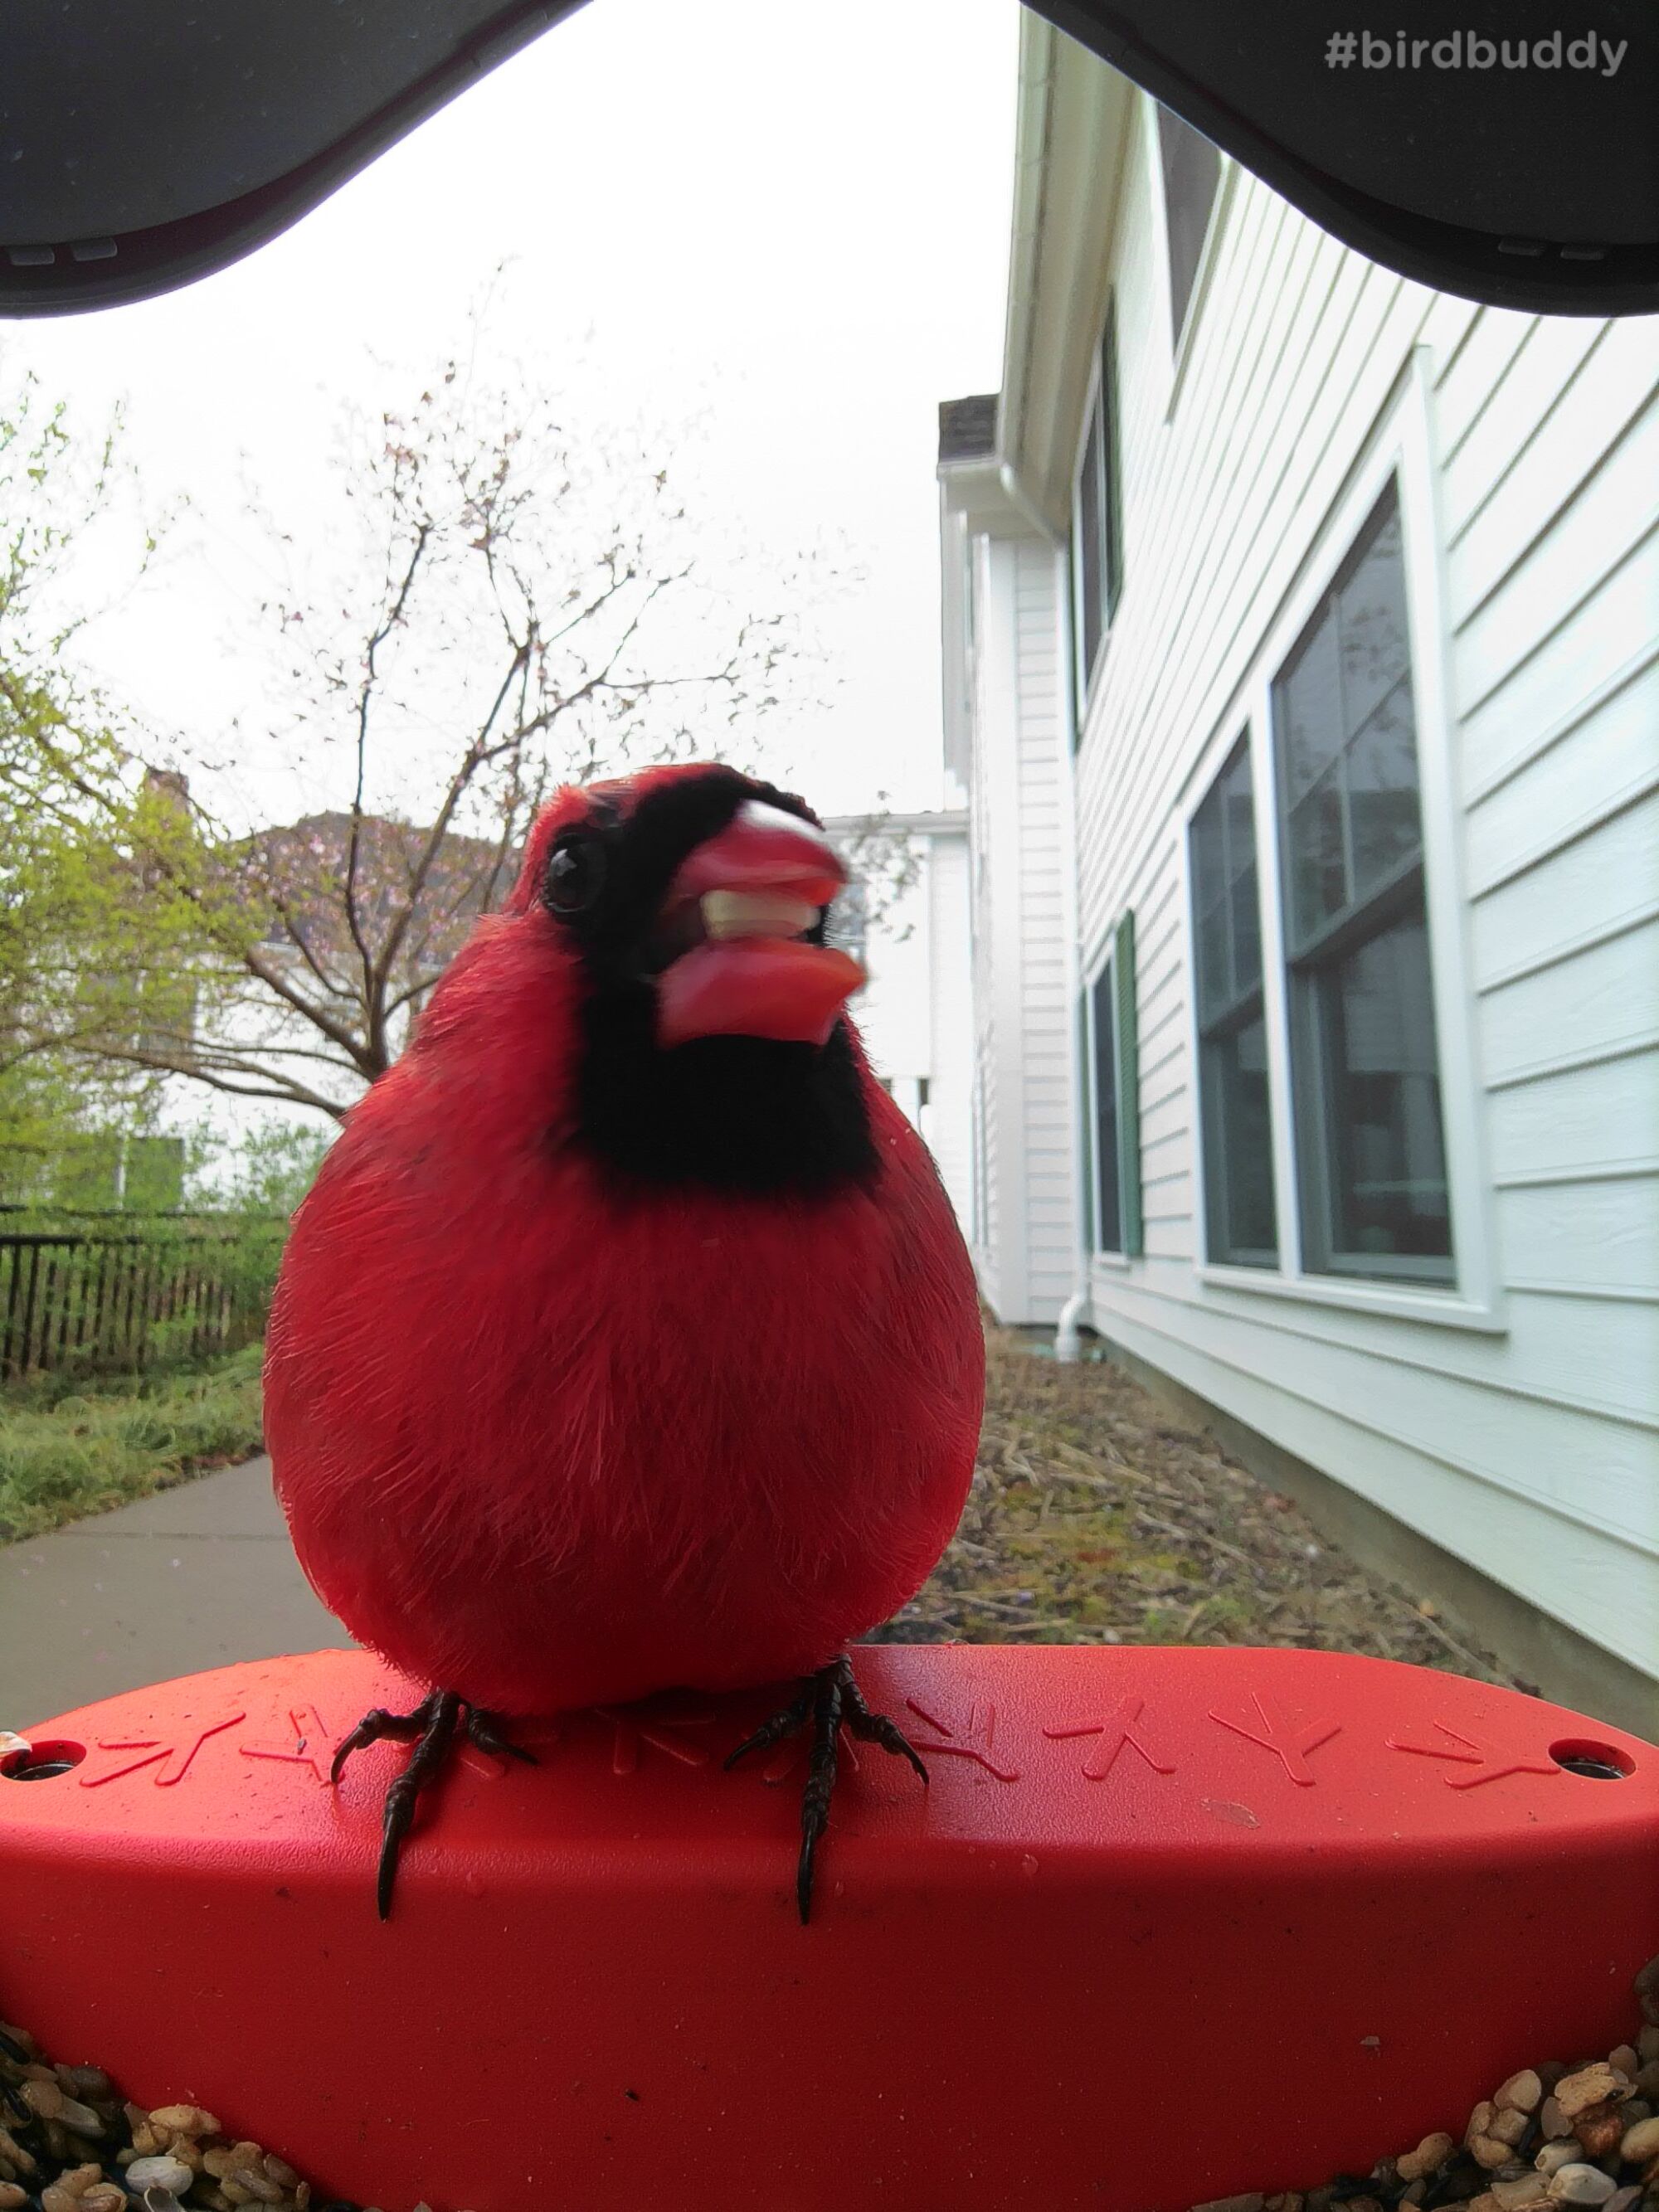 Крупный план красного кардинала с семенем в клюве у кормушки для птиц.